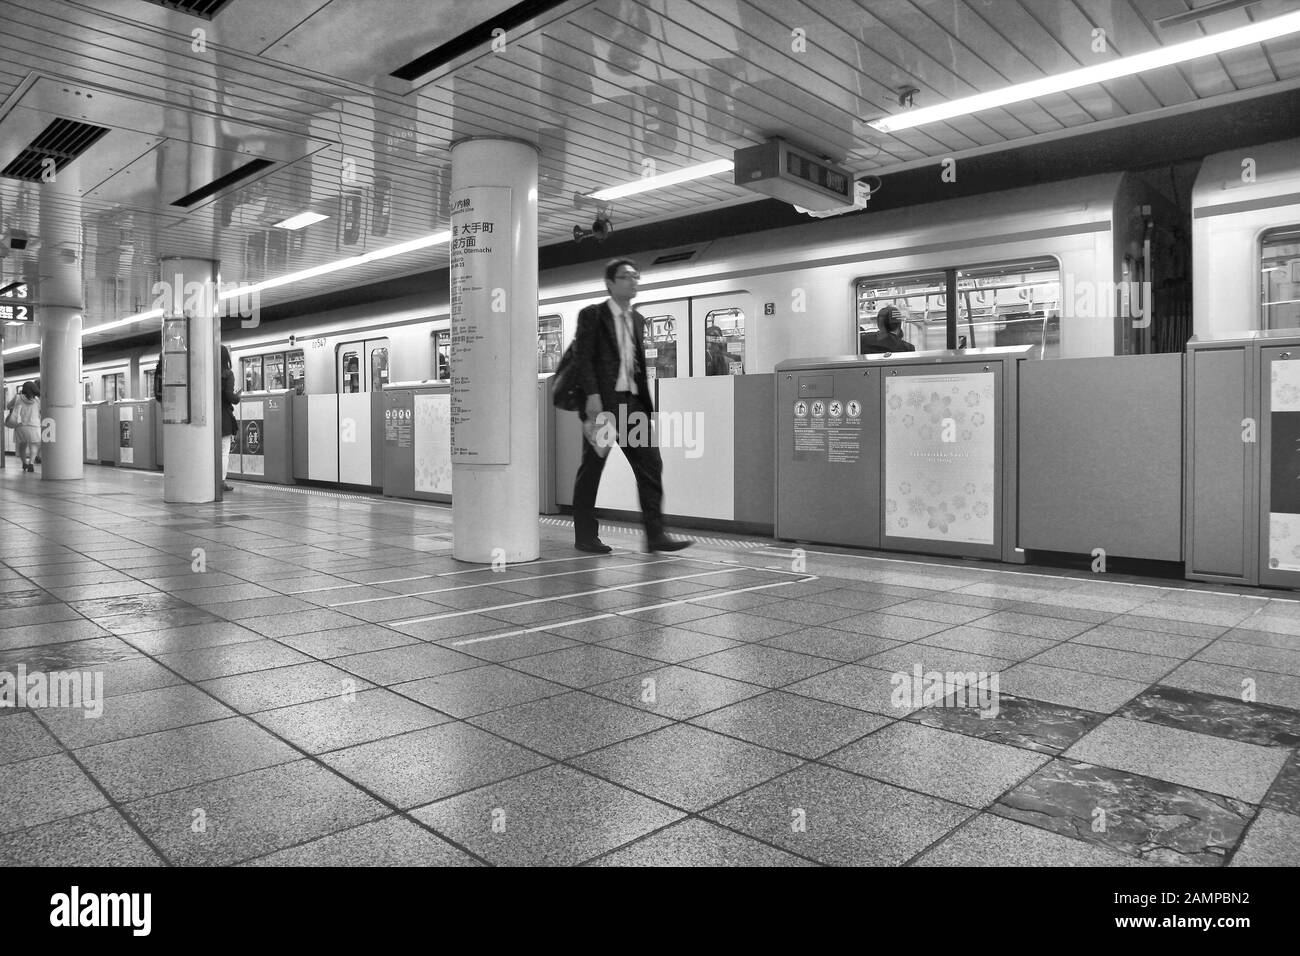 TOKYO, JAPON - 13 avril 2012 : la sortie de métro de Tokyo. Avec plus de 3,1 milliards de passagers annuels des manèges, métro de Tokyo est le plus achalandé worldwid Banque D'Images